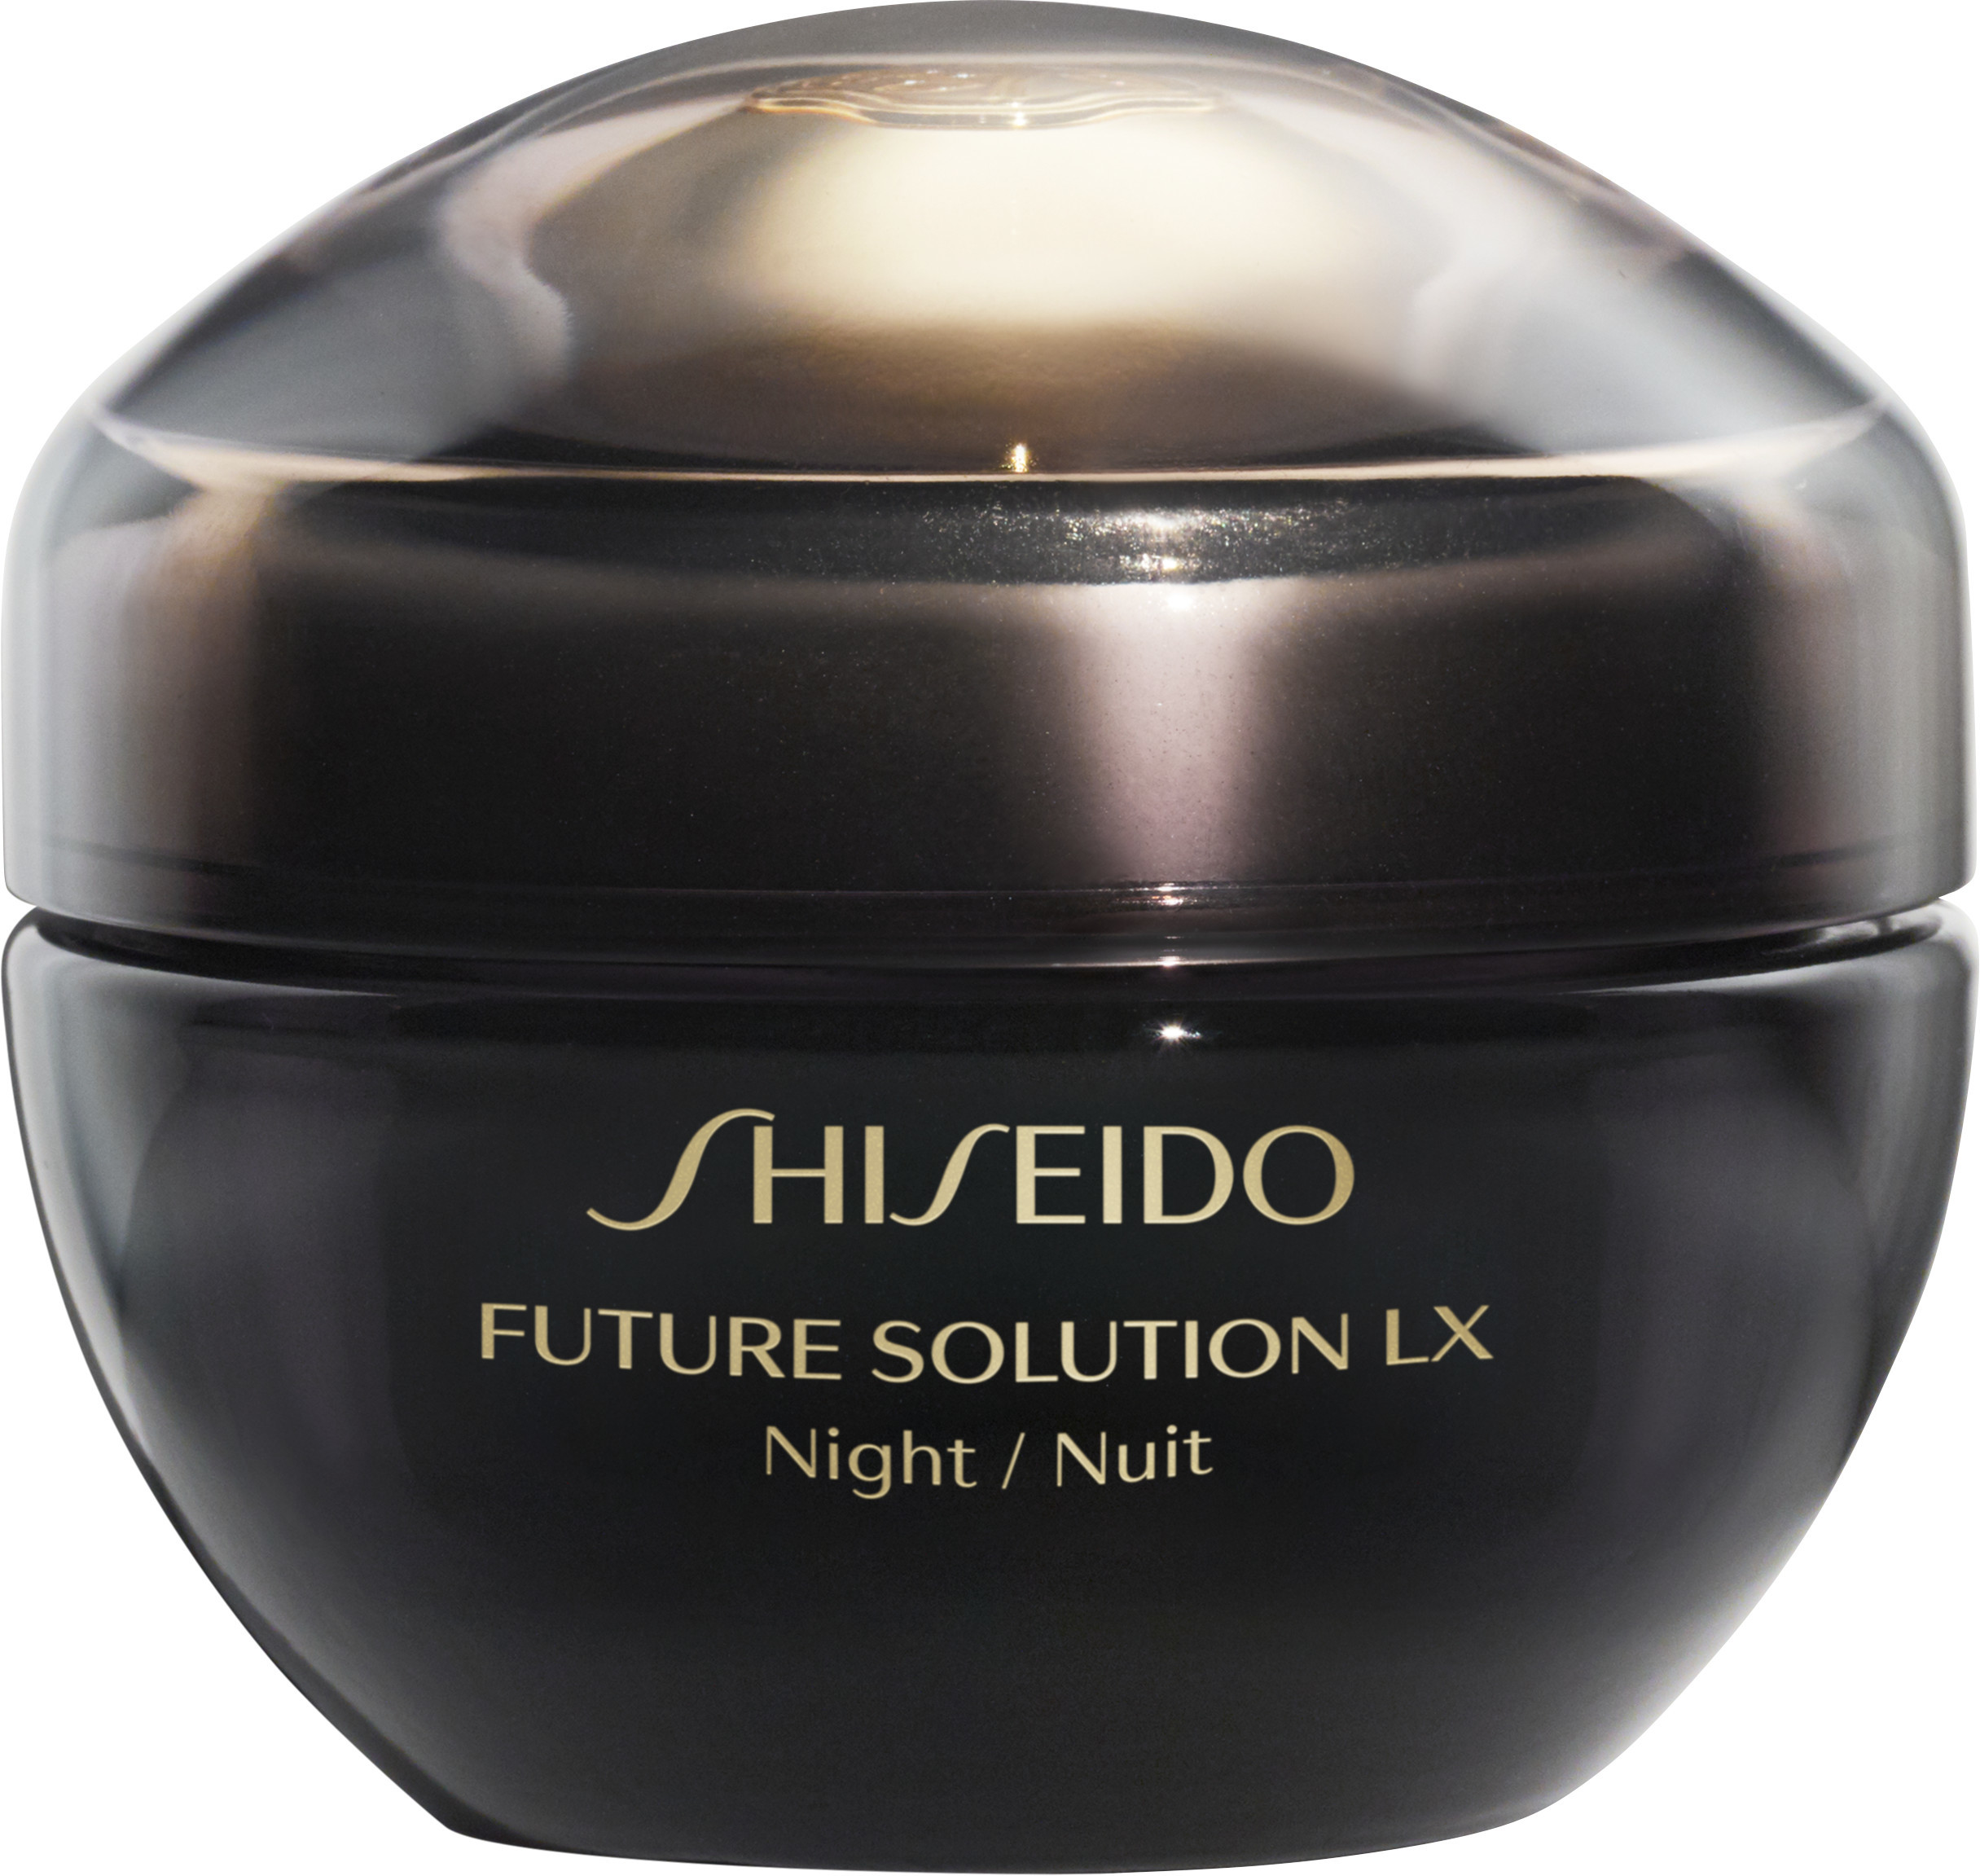 Shiseido solution lx. Shiseido Future solution LX. Шисейдо крем. Future solution LX Shiseido сыворотка. Shiseido Future solution LX крем для комплексного обновления кожи e для лица.